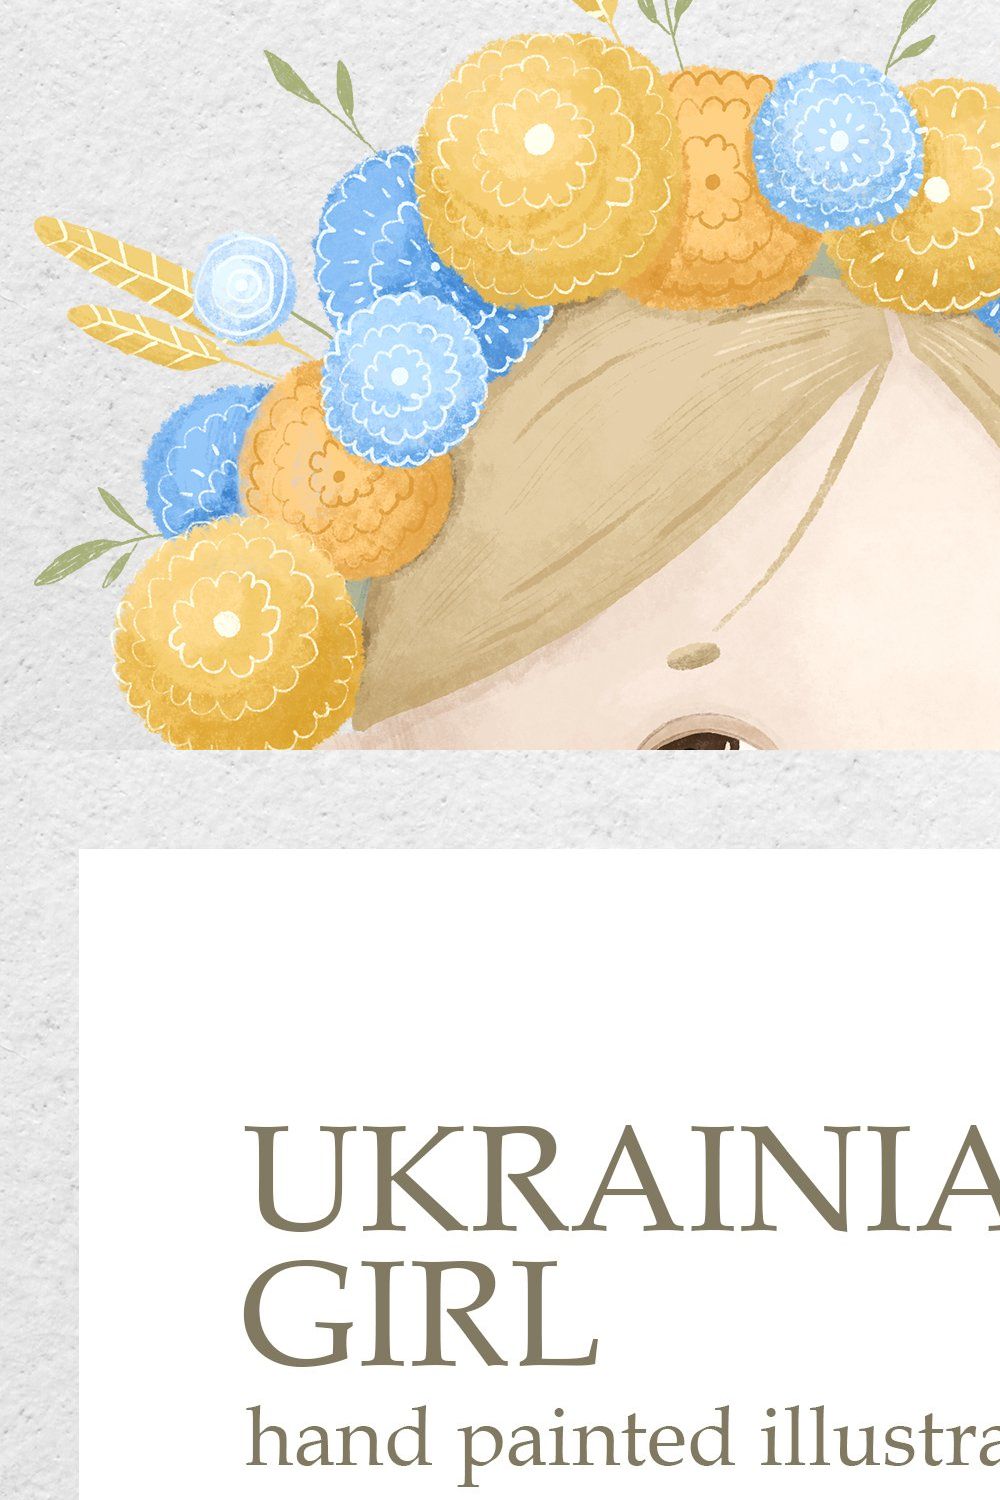 UKRAINE. UKRAINIAN GIRL pinterest preview image.